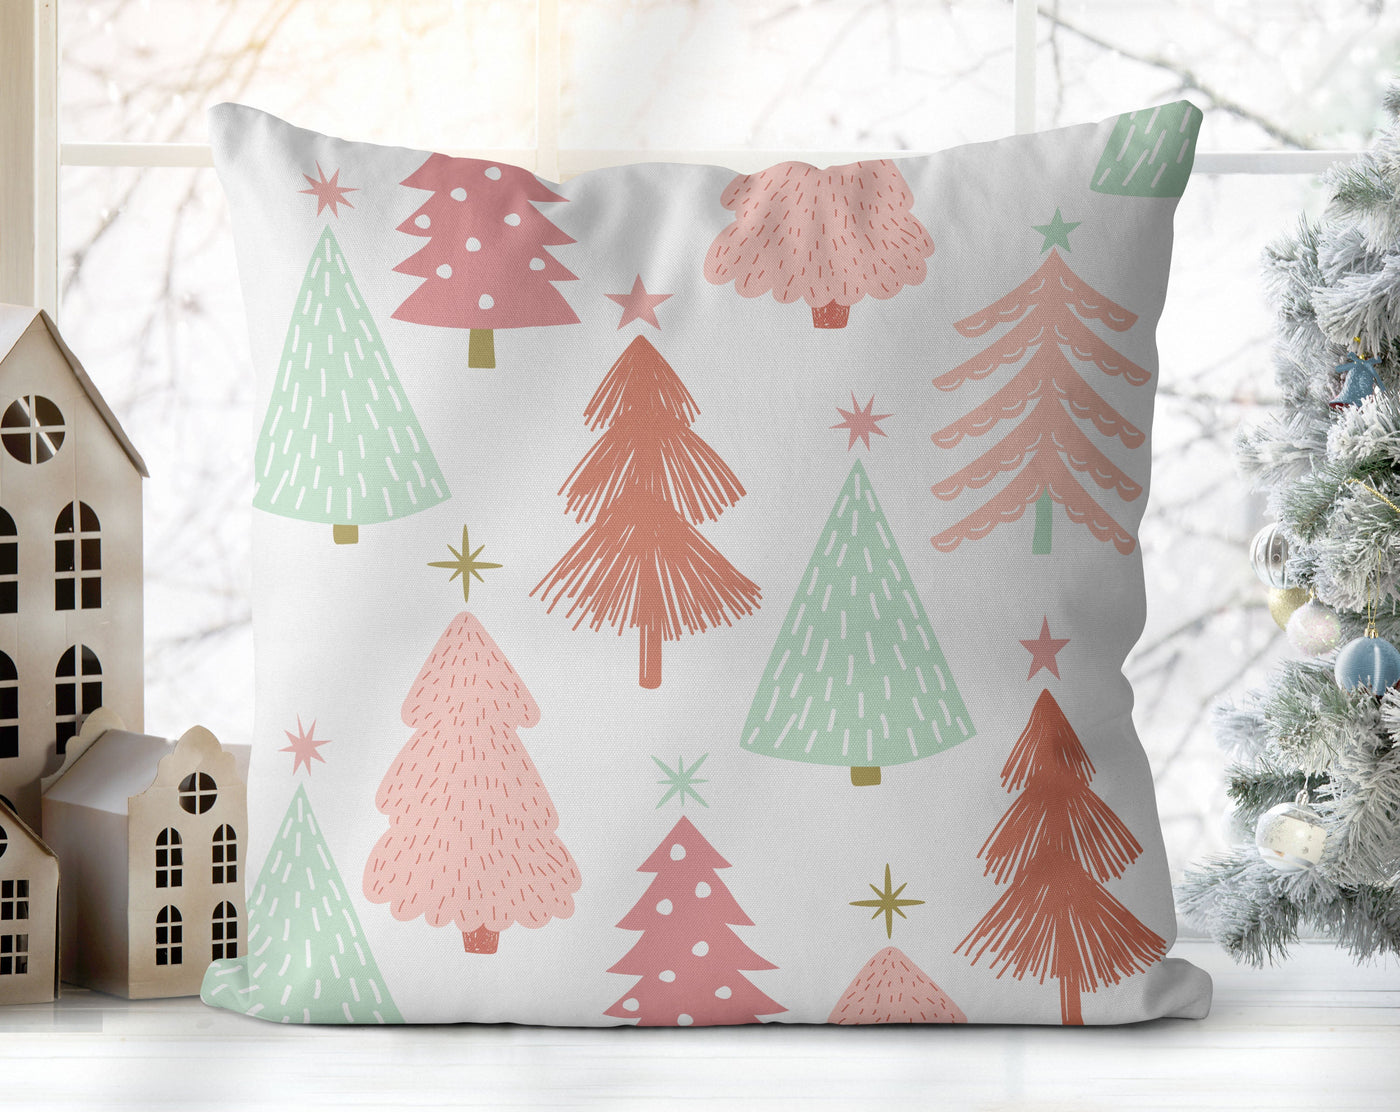 Marvelous Christmas Trees Pink, Green and White Pillow Throw - Cush Potato Pillows